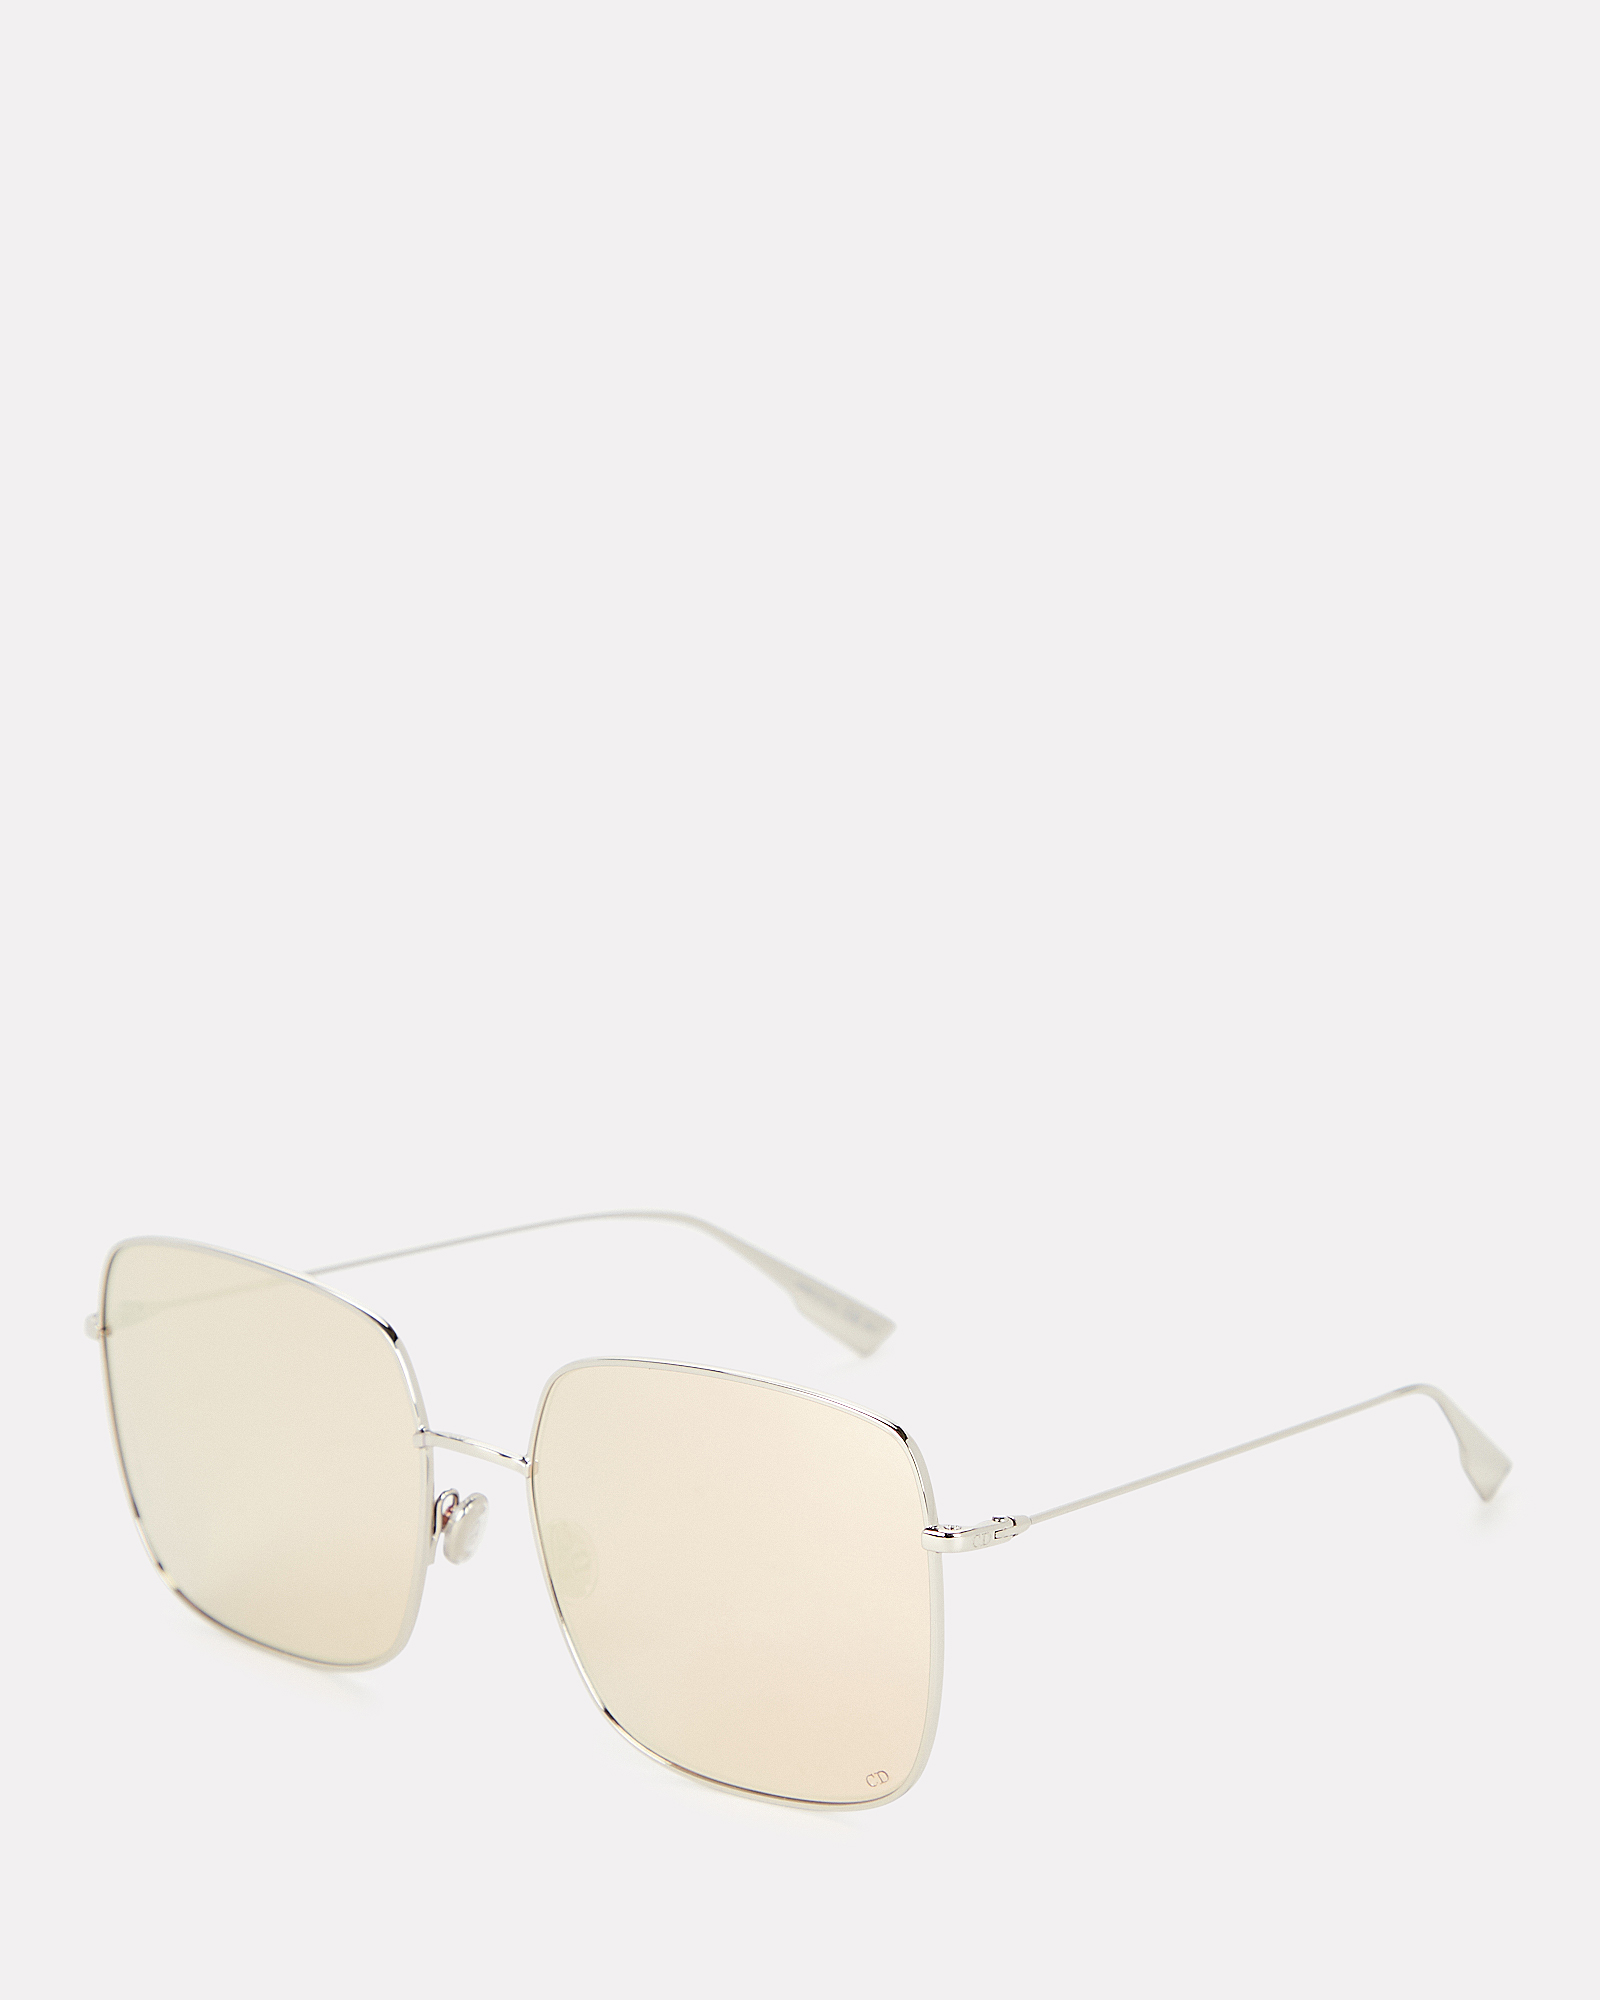 Dior | DiorStellaire1 Square Sunglasses | INTERMIX®